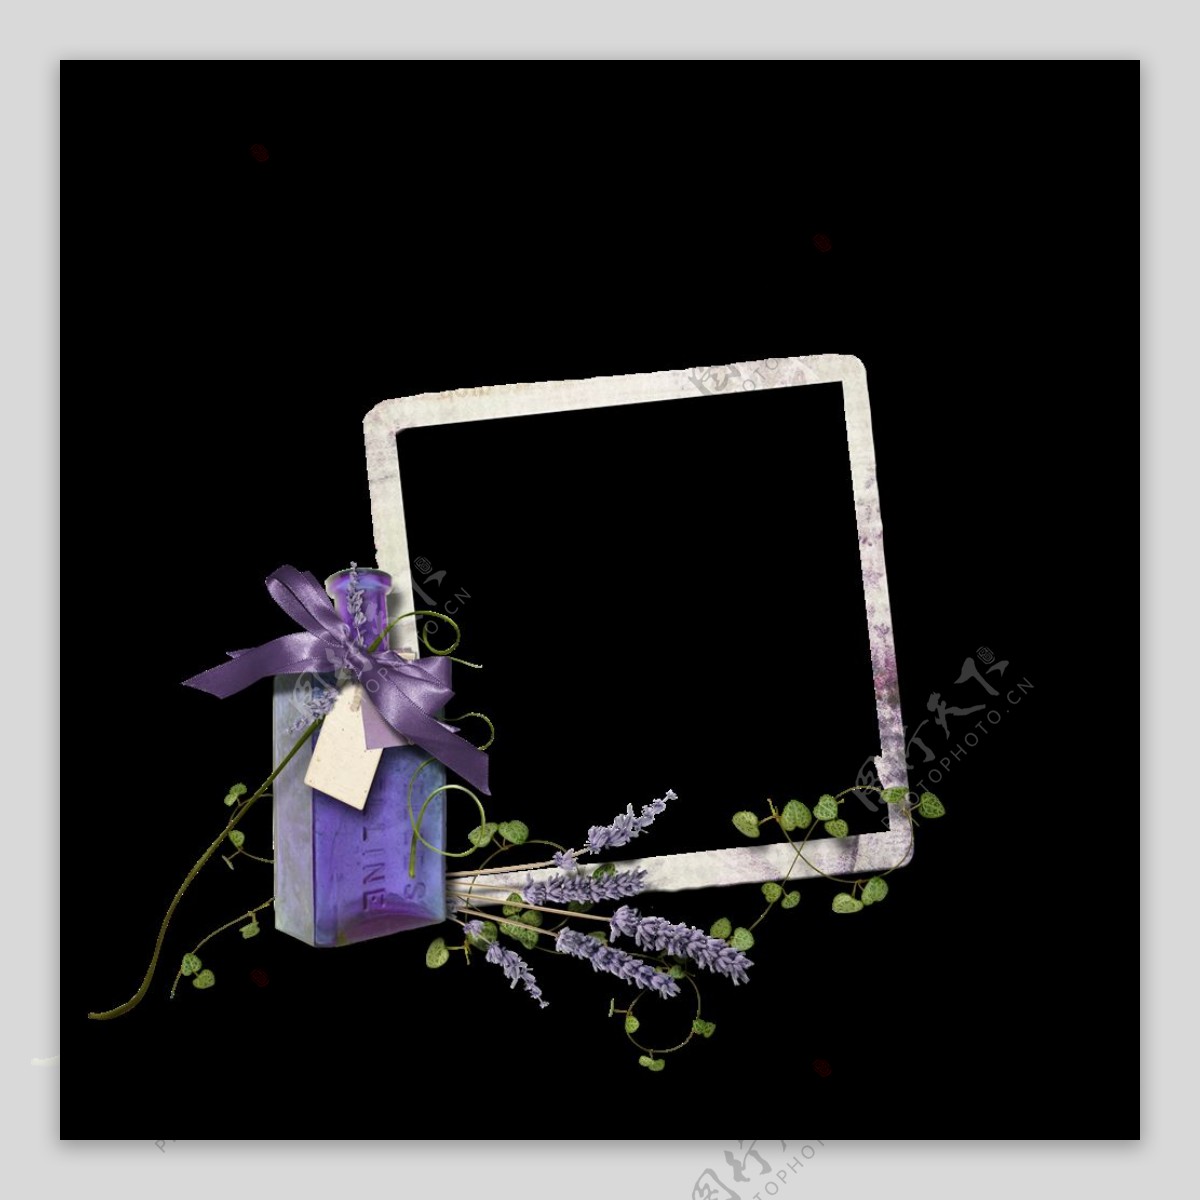 紫色花朵边框素材